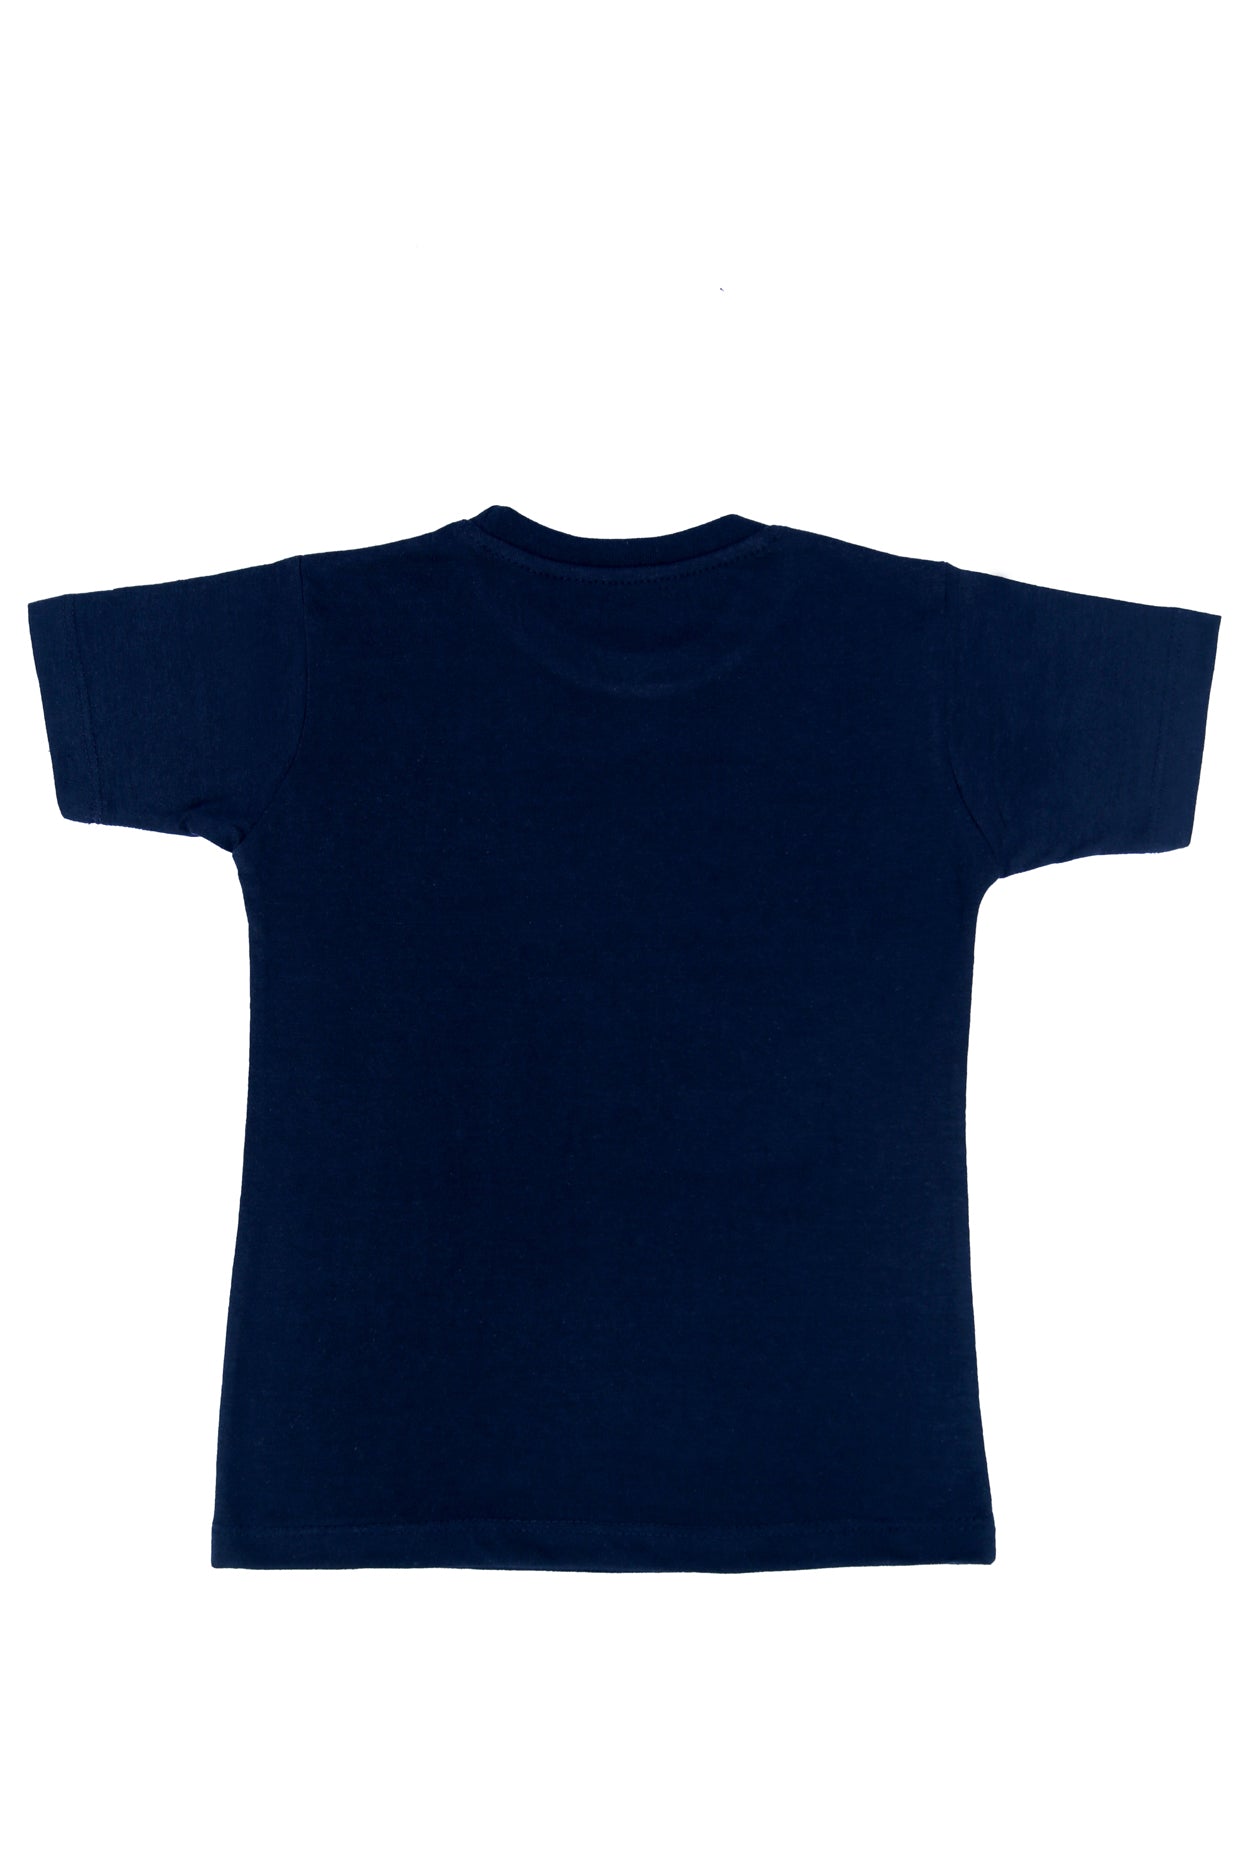 Kids T-Shirt (D-192)